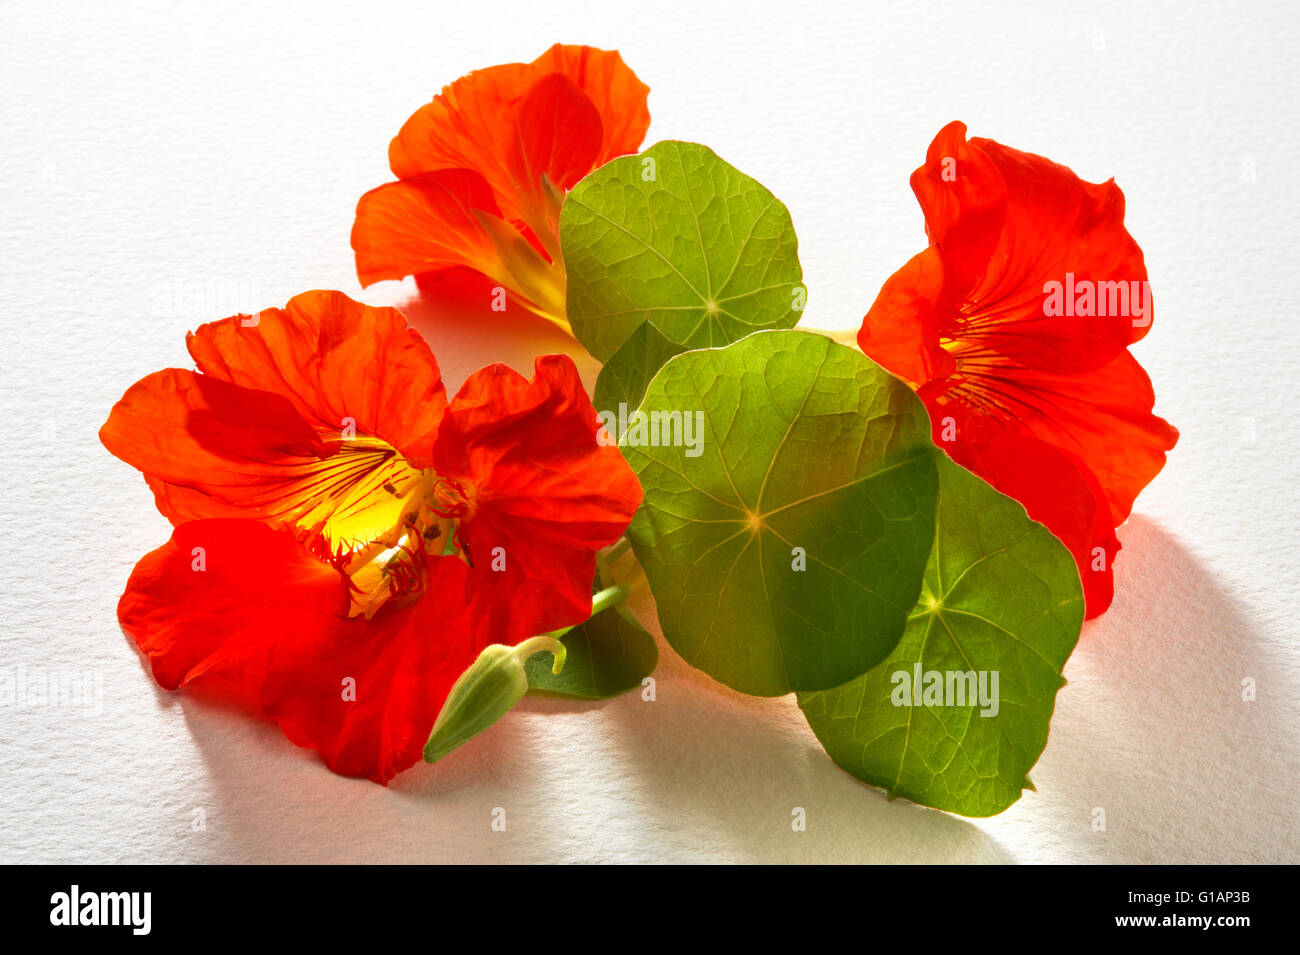 Fresh red nasturtium flowers & leaves Stock Photo